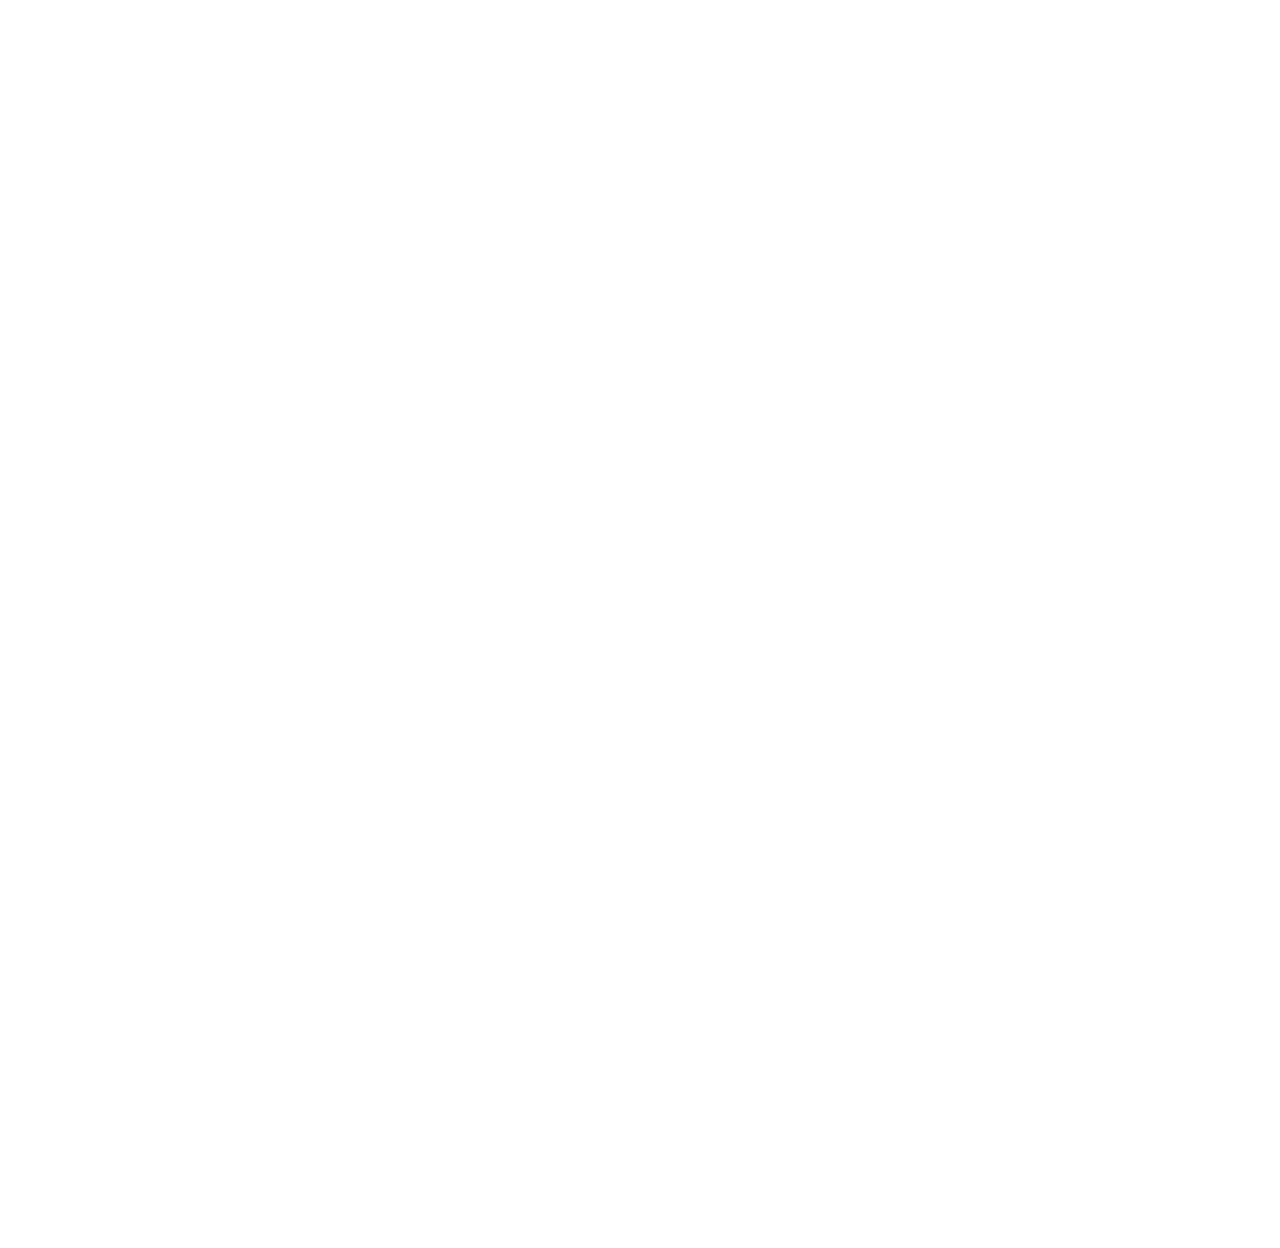 North American Naturals, LLC's logo